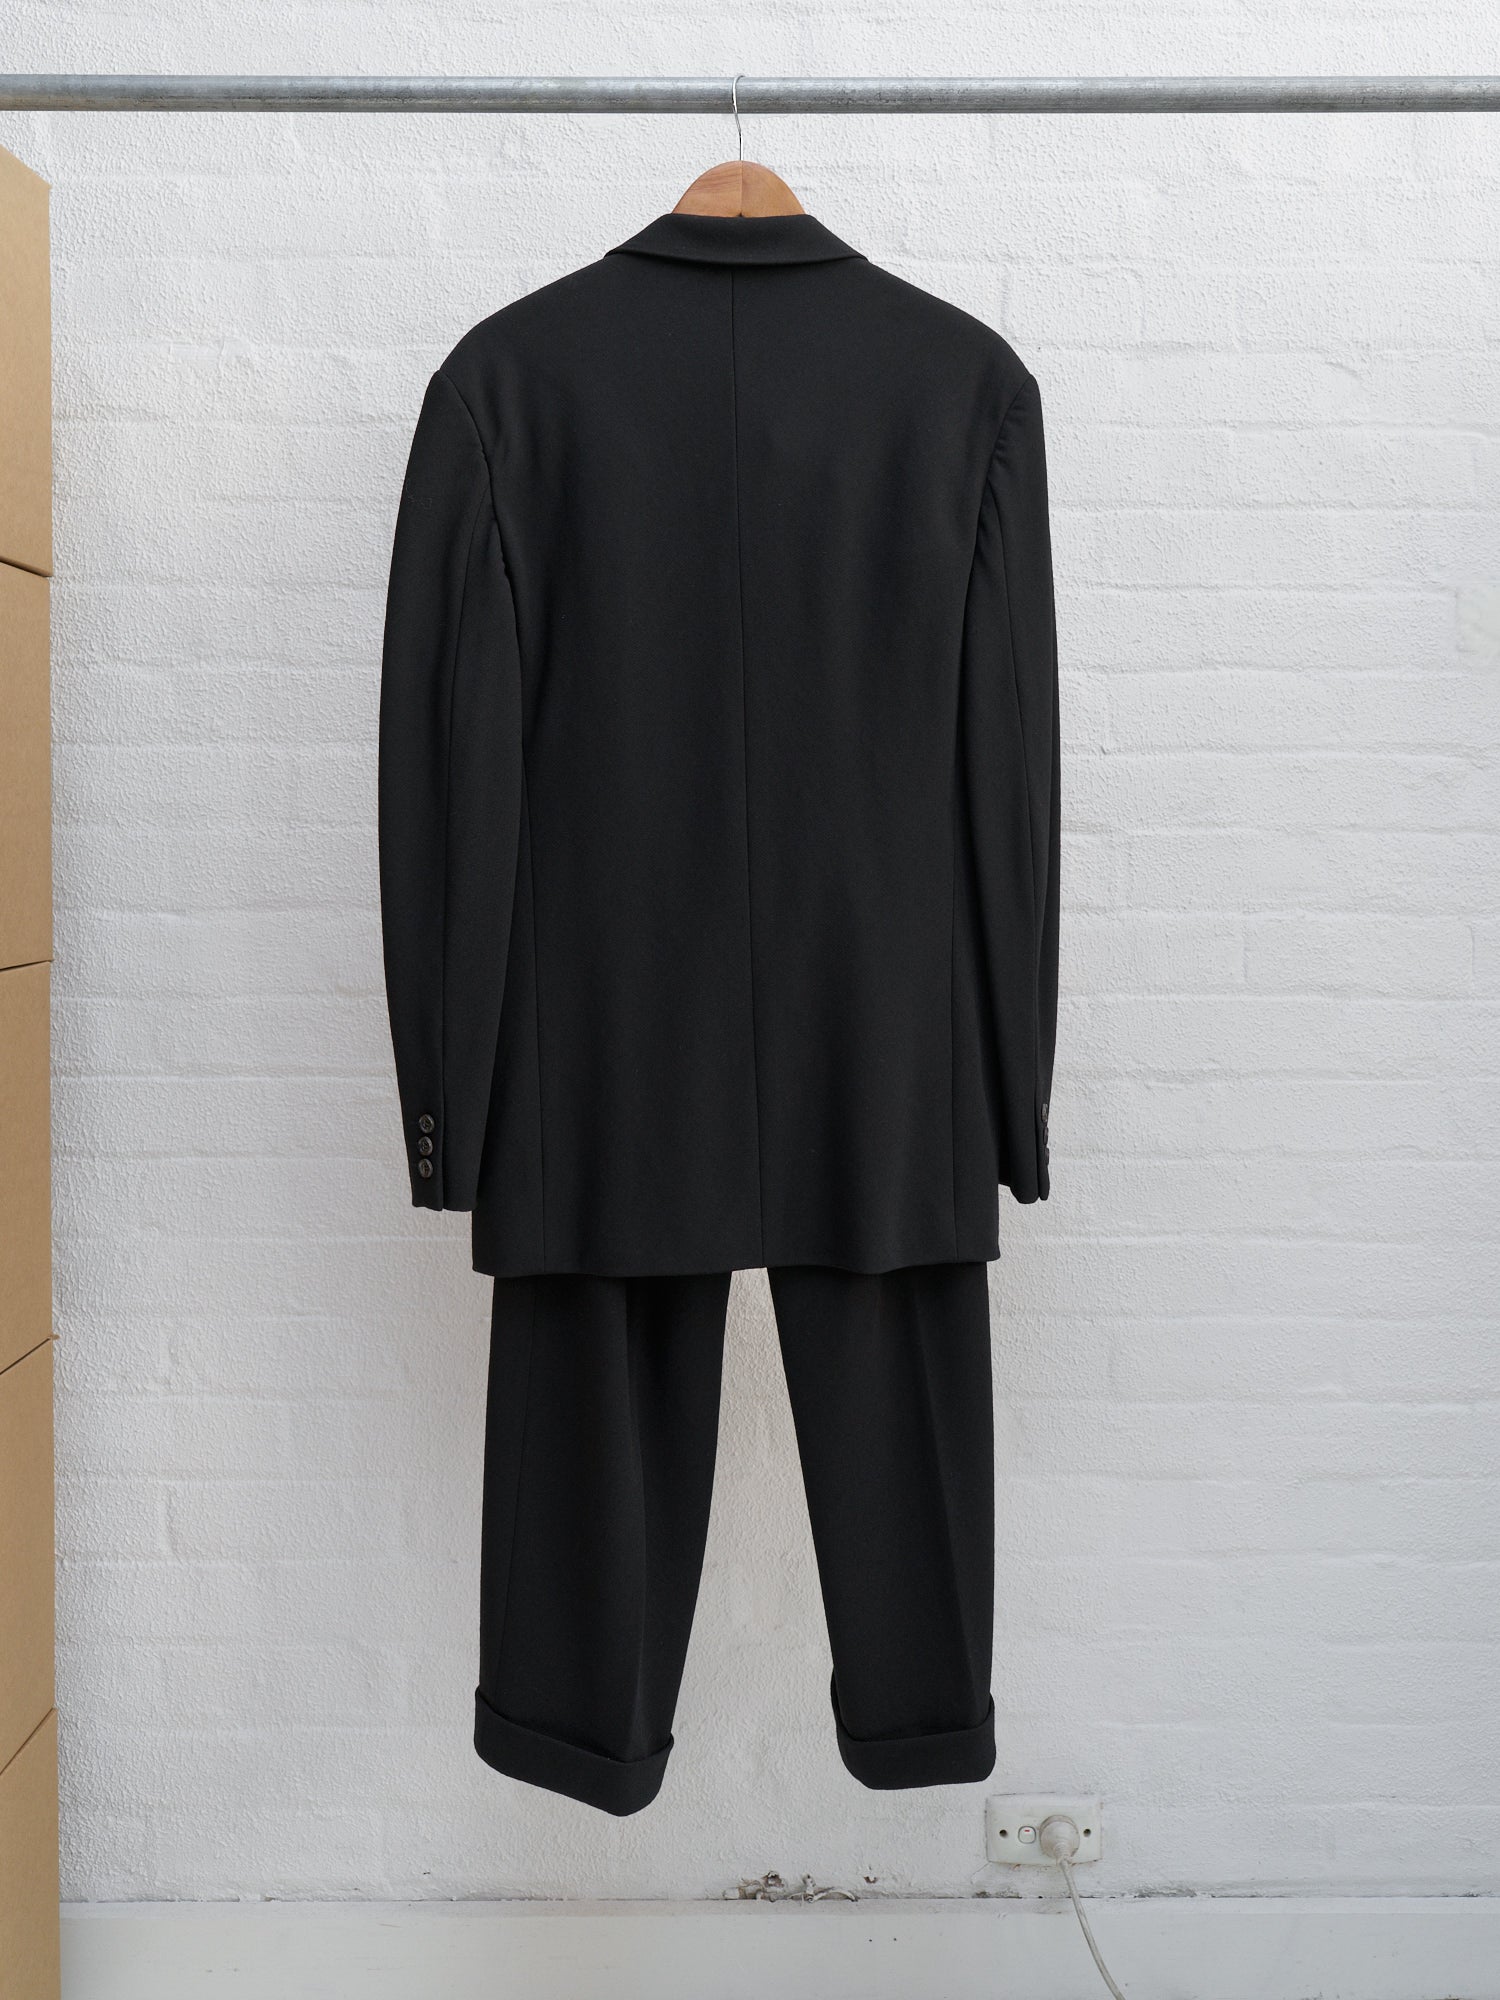 Comme des Garcons Homme Plus 1997 black wool 3 button elastic waist suit - sz S